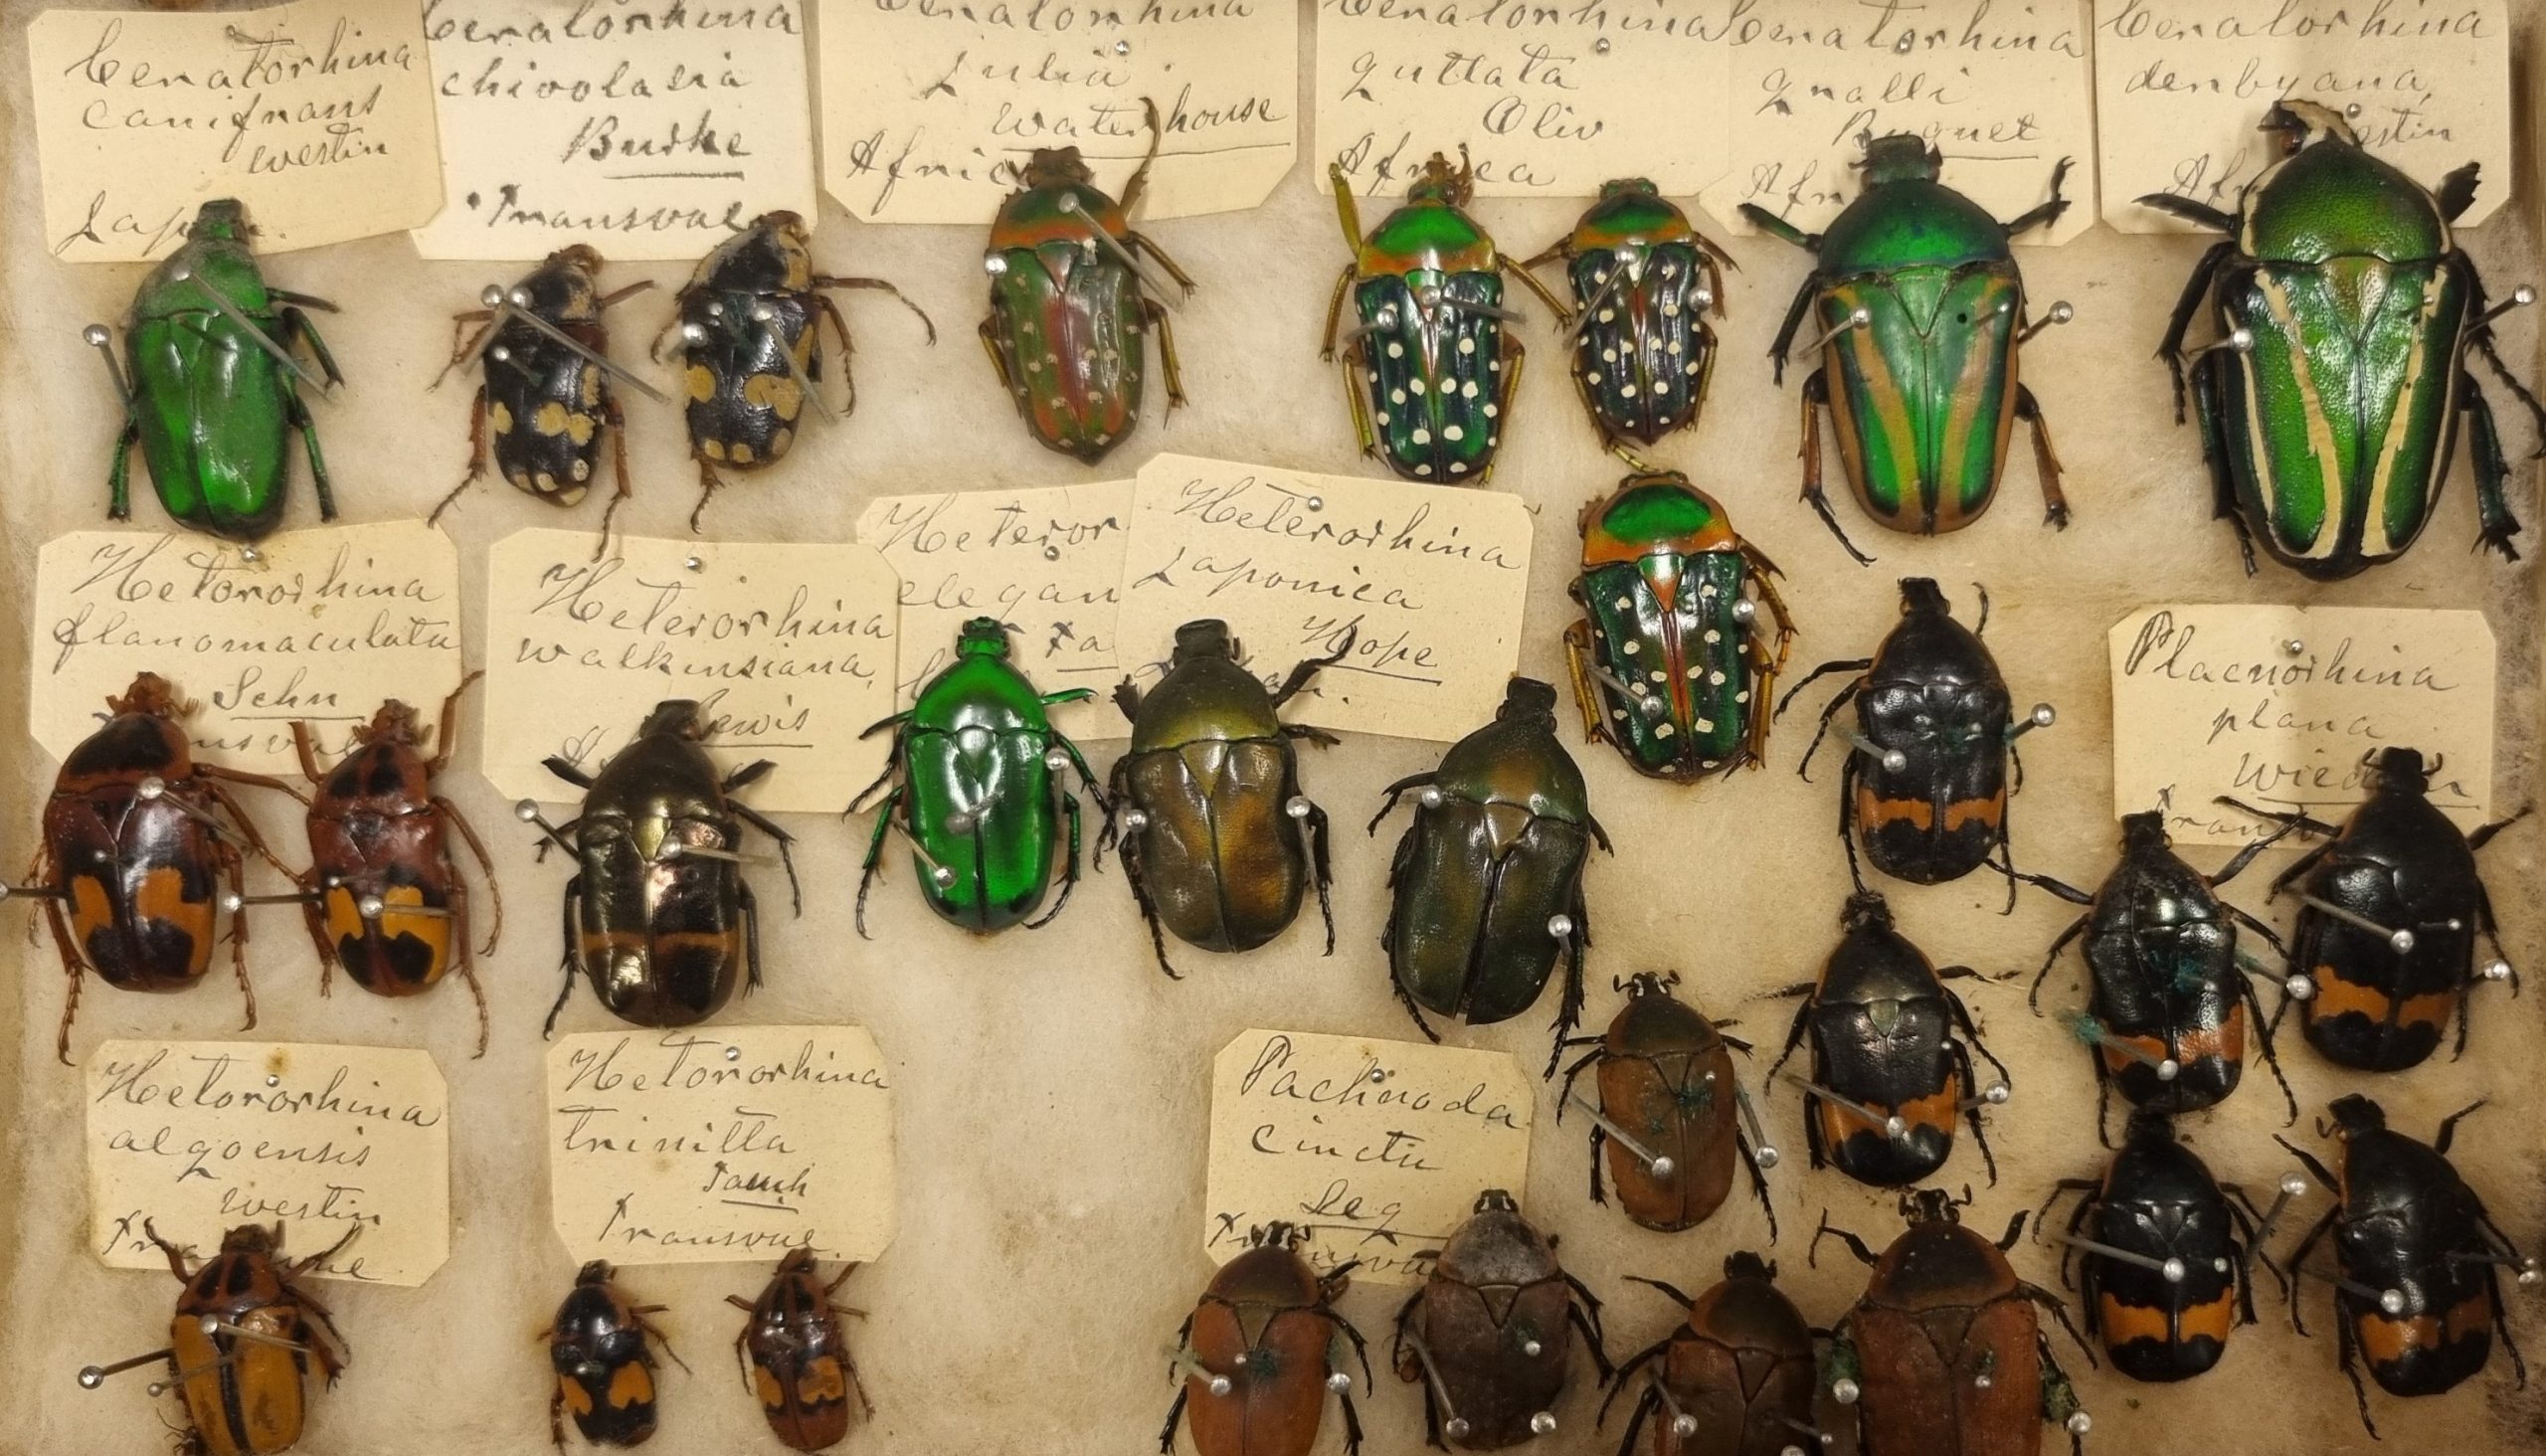 Skalbaggar, Lamellicornia, ur Cecilia Anderssons samling, Helsingborgs museum.